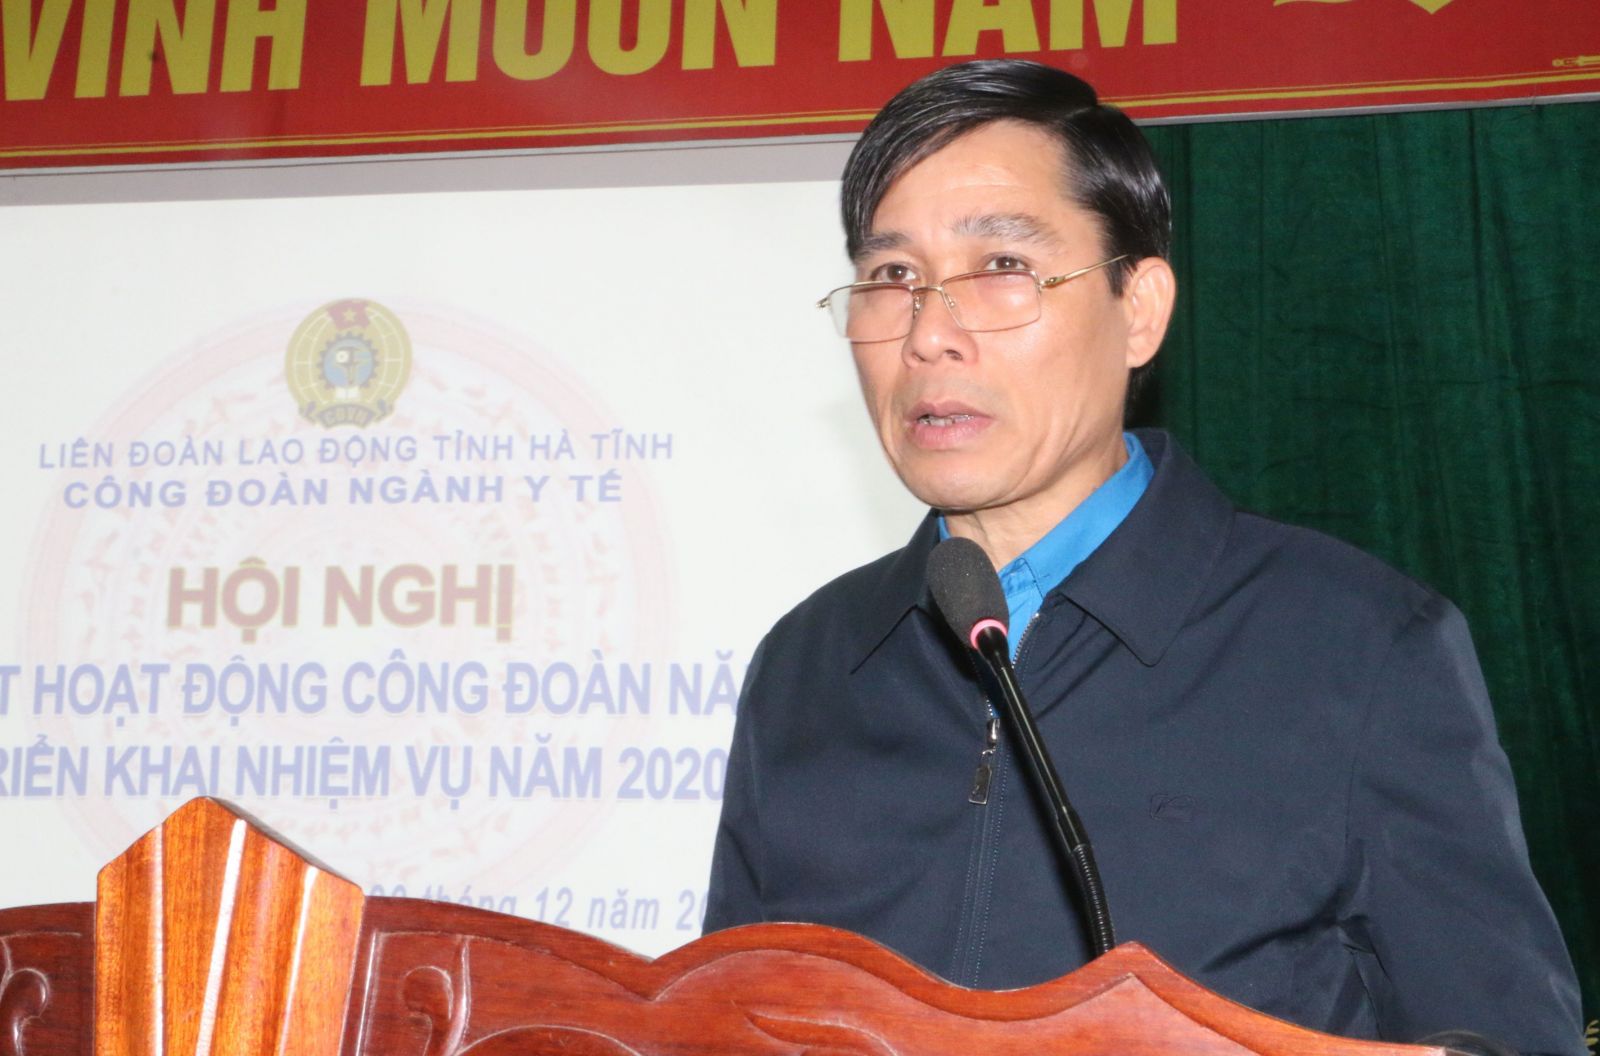 Đồng chí Nguyễn Văn Hải - Phó Chủ tịch TT Công đoàn Ngành Y tế báo cáo kết quả hoạt động thời gian qua